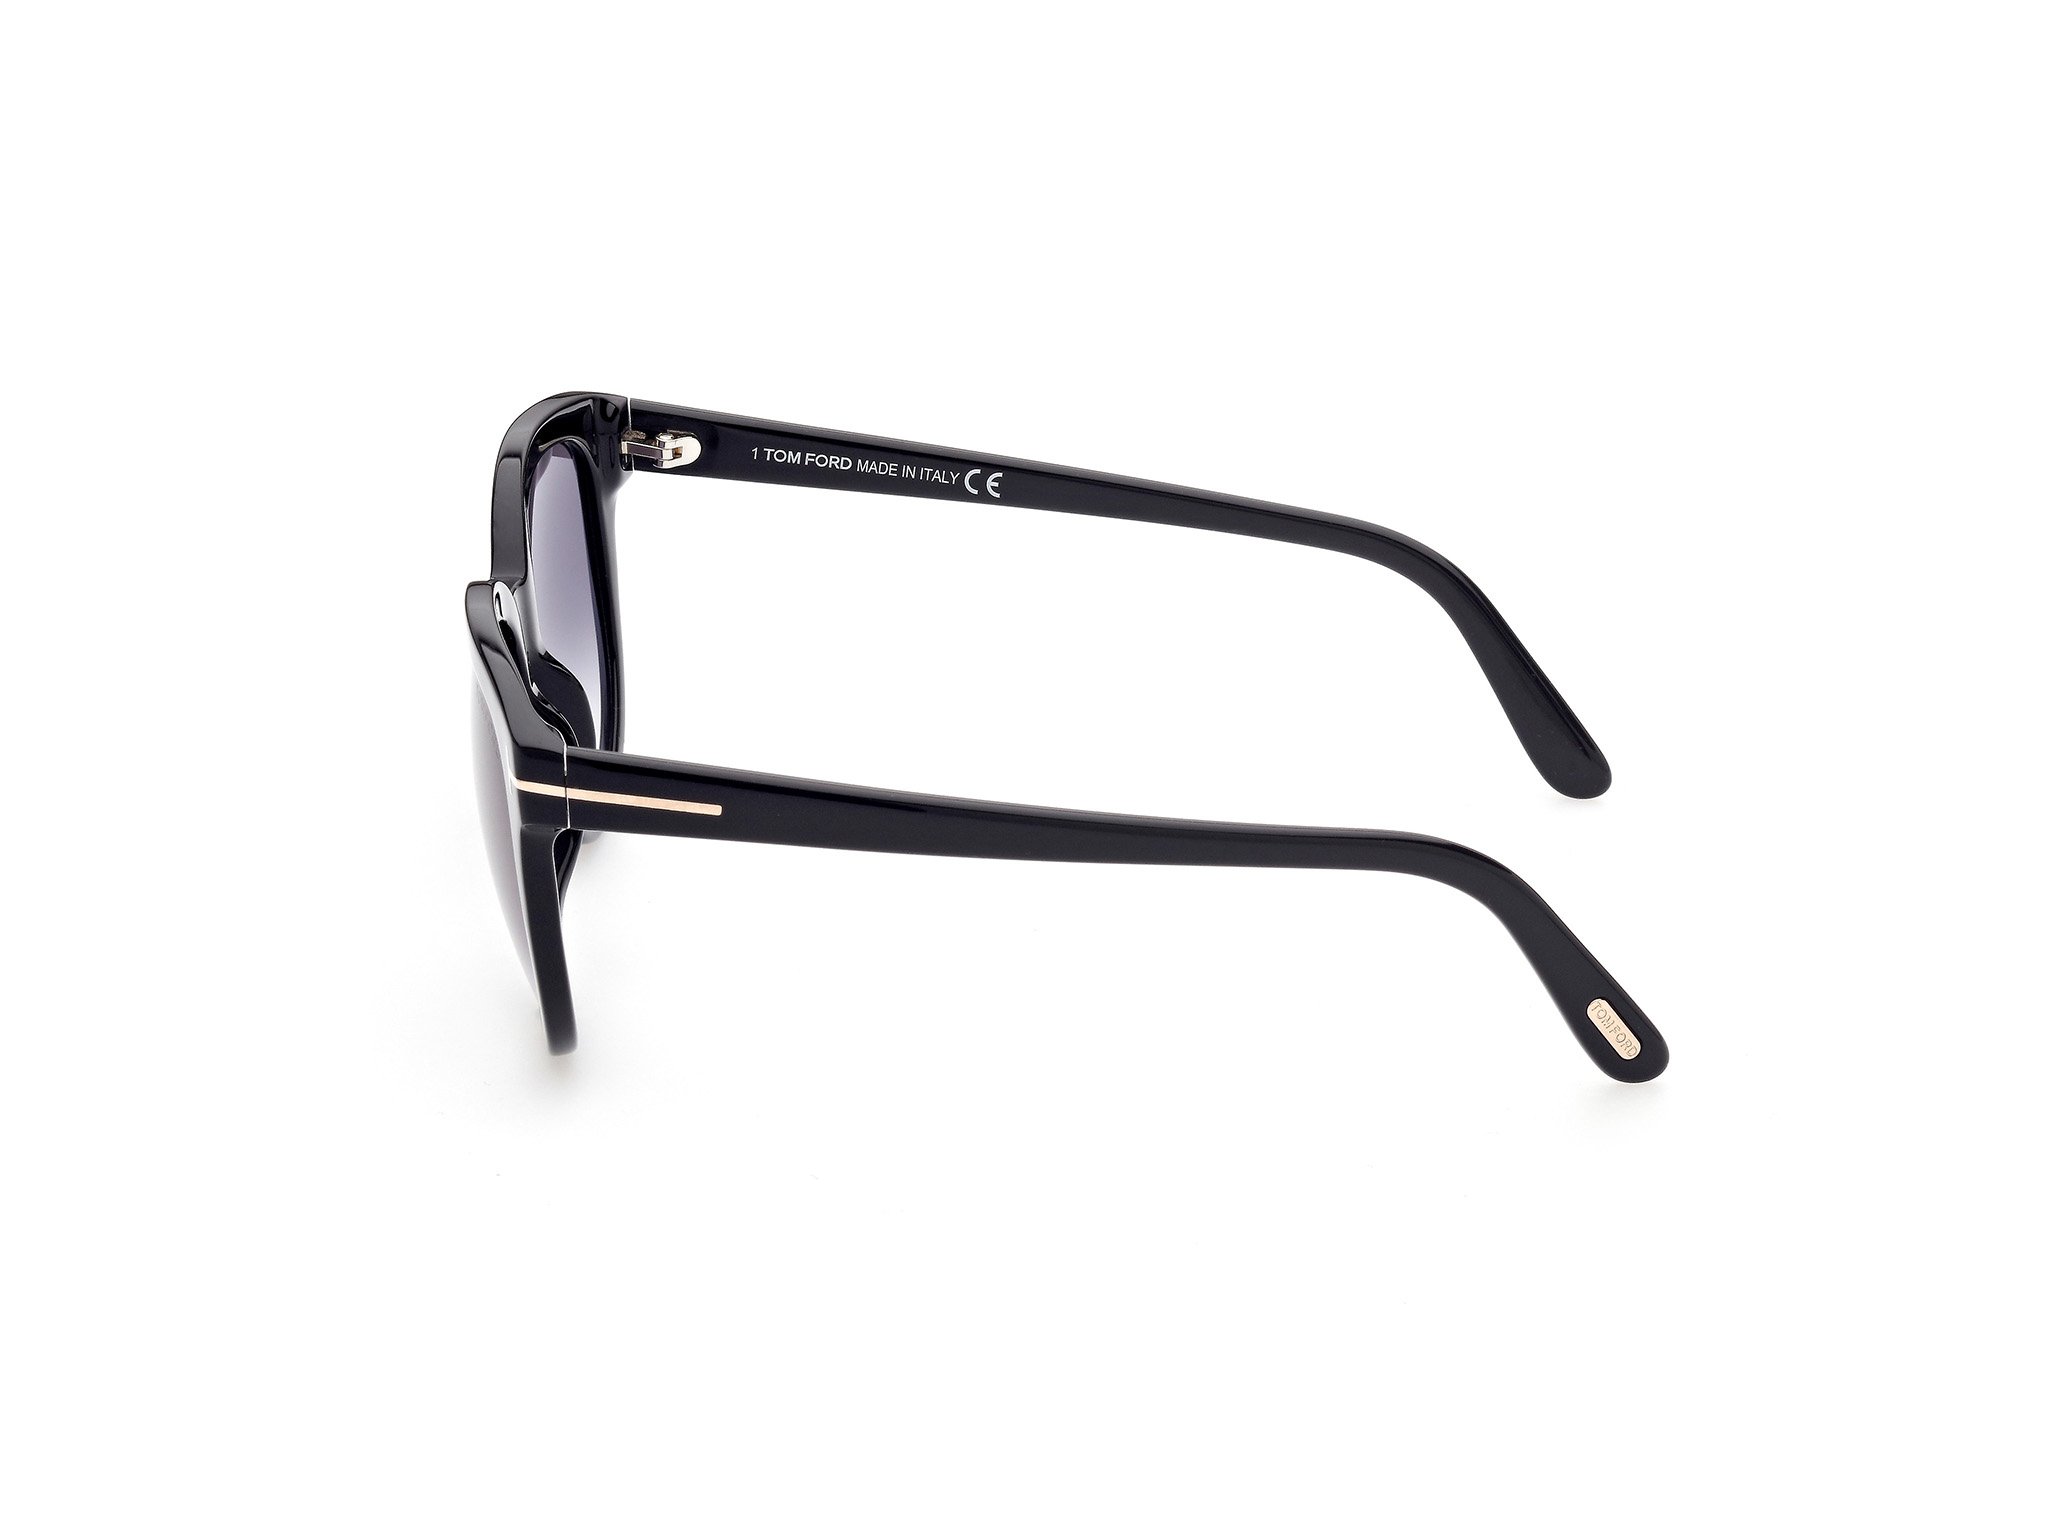 Das Bild zeigt die Sonnenbrille Olivia FT0914 von der Marke Tom Ford in schwarz seitlich